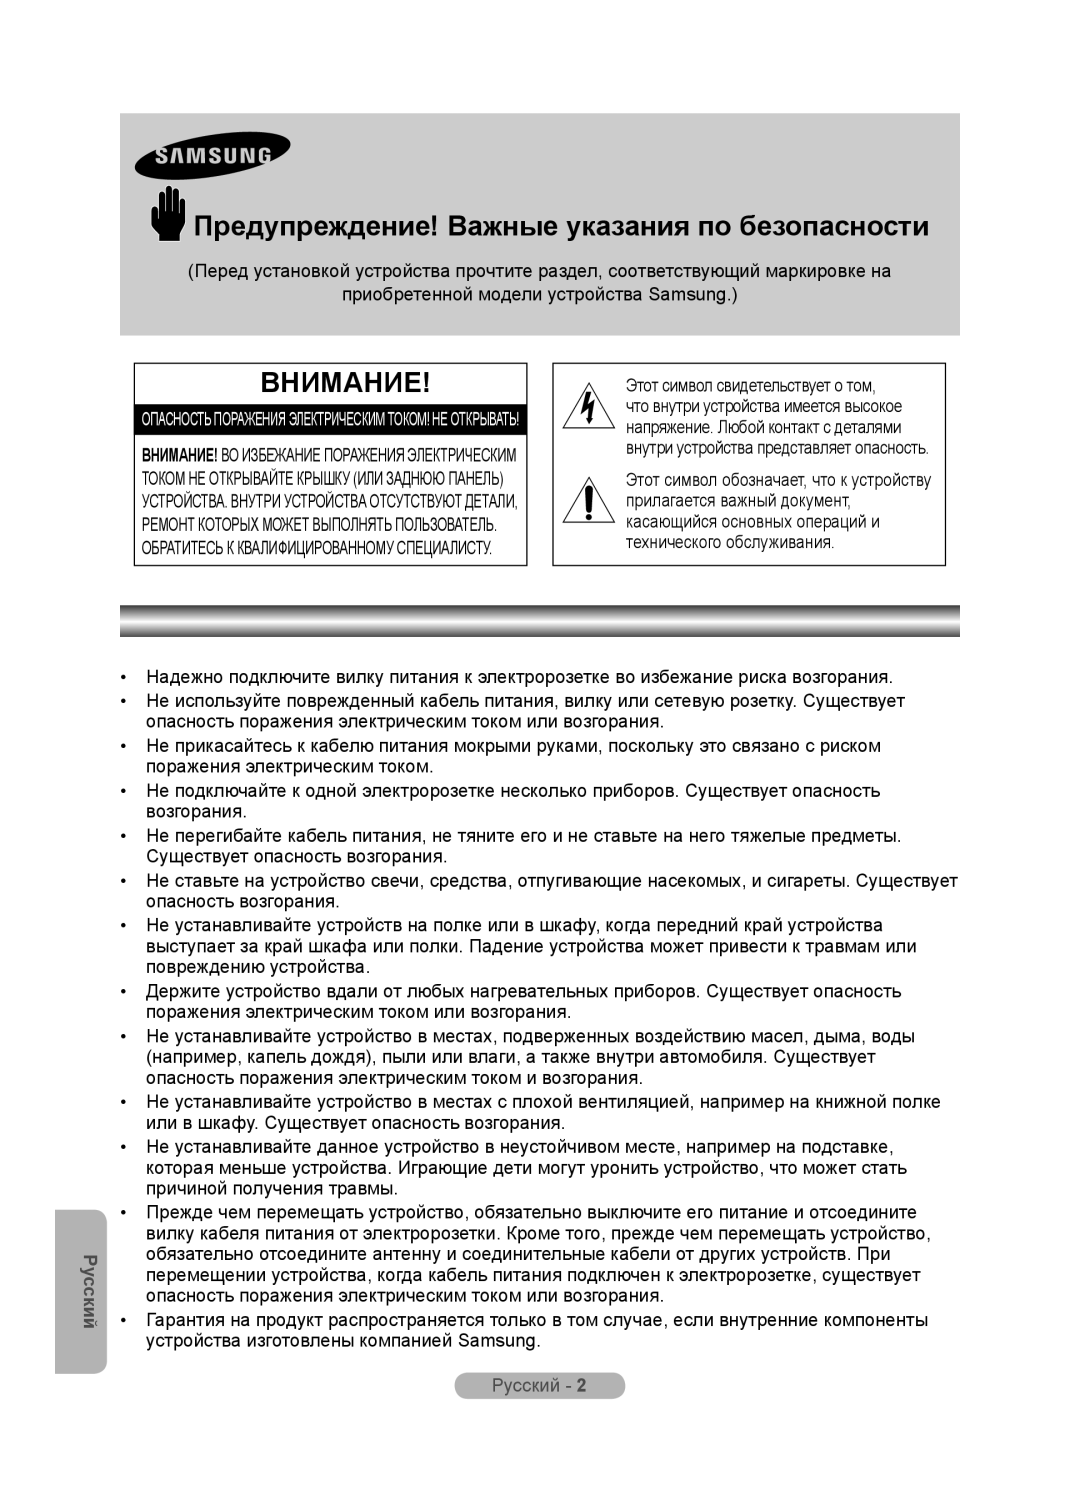 Samsung MR-16SB2 manual Предупреждение! Важные указания по безопасности, Русский, Внимание 